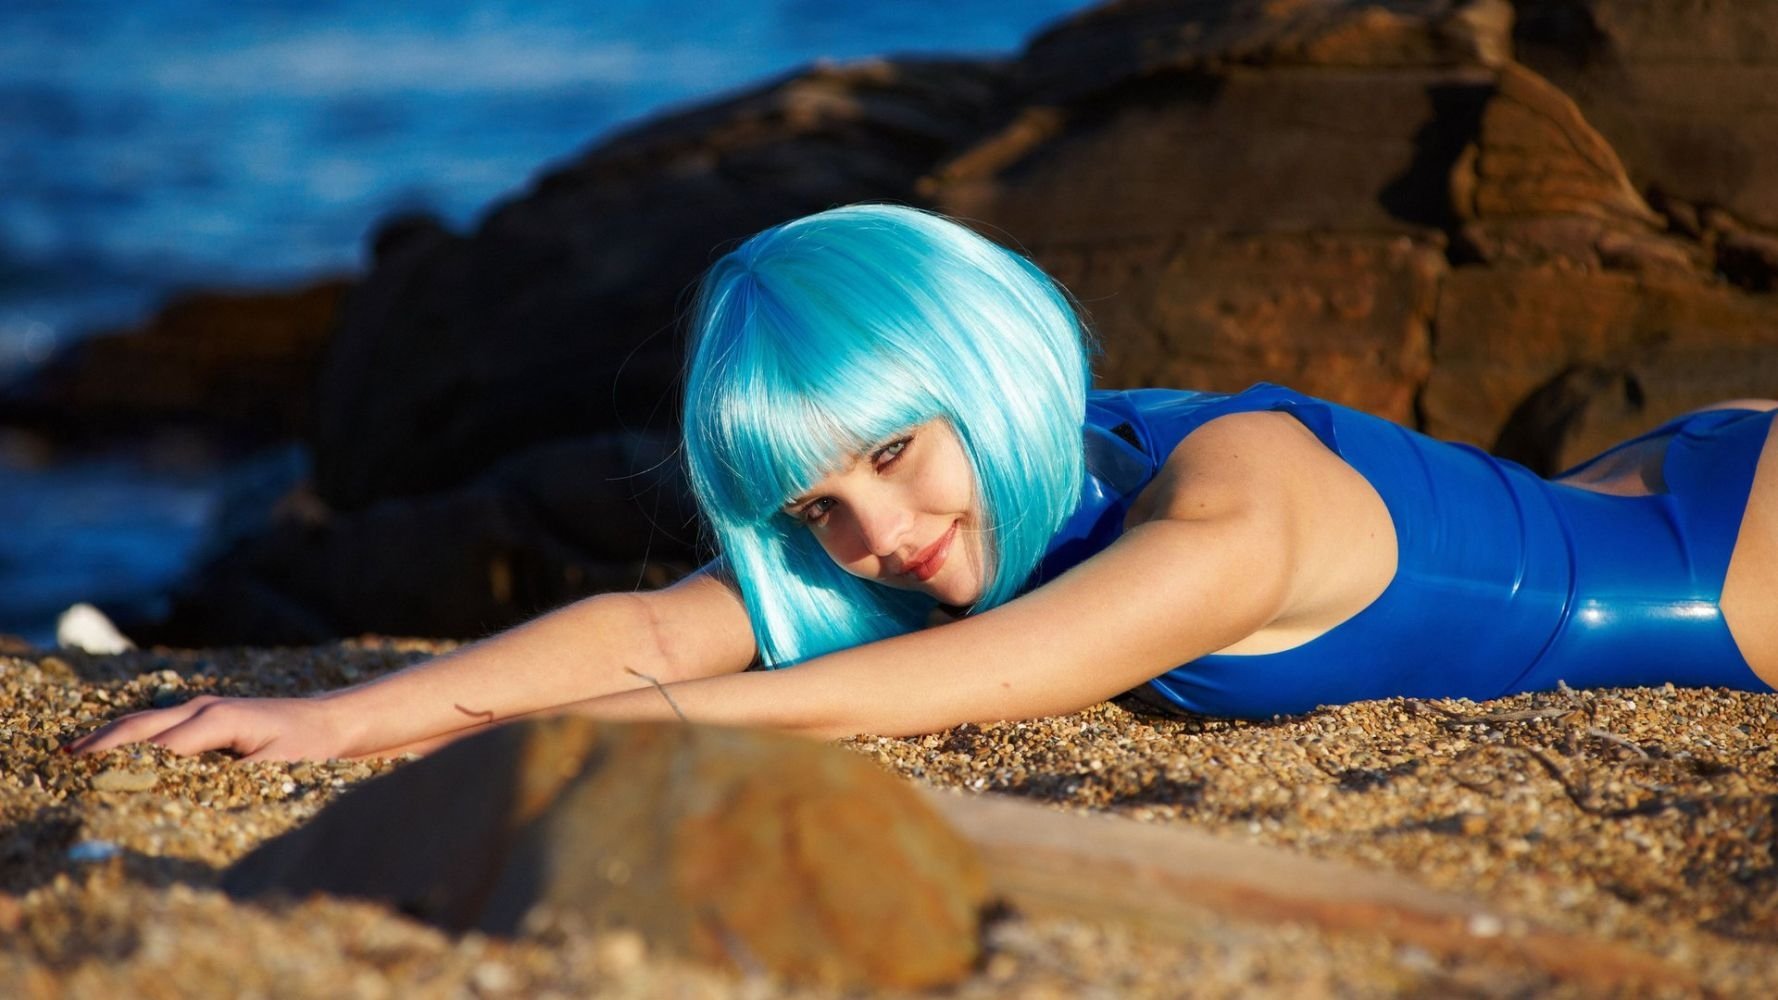 Косплейша с голубыми косами снимает свой сексуальный наряд